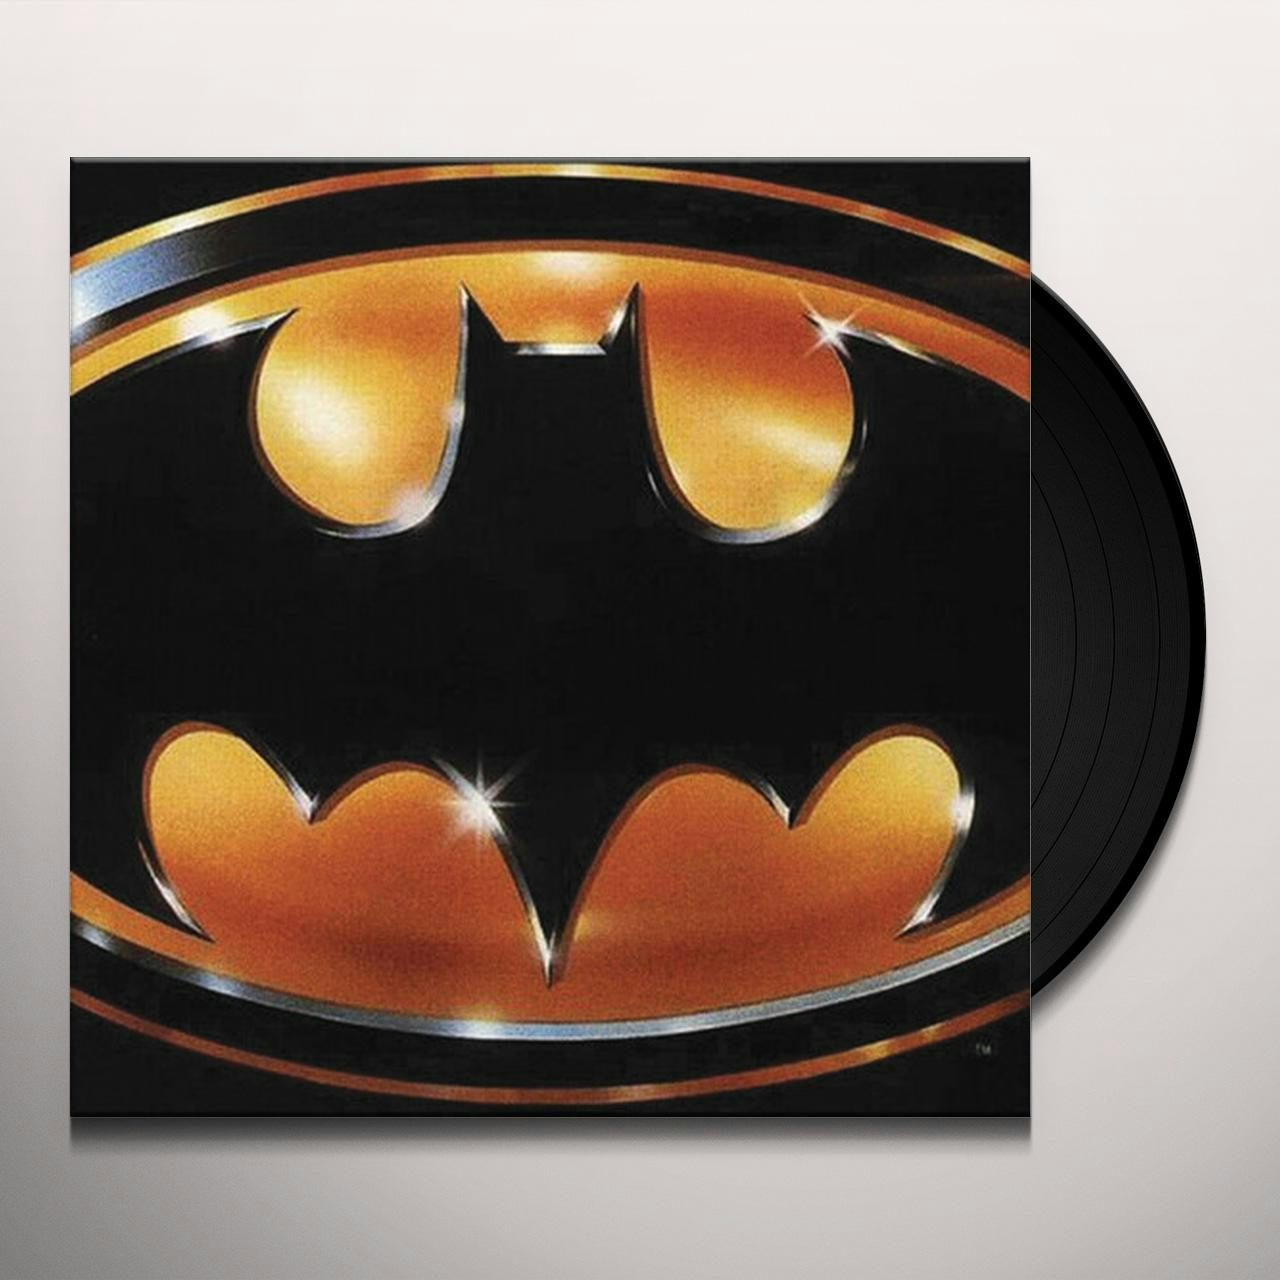 Prince Batman - Original Soundtrack Vinyl Record $28.49$25.49